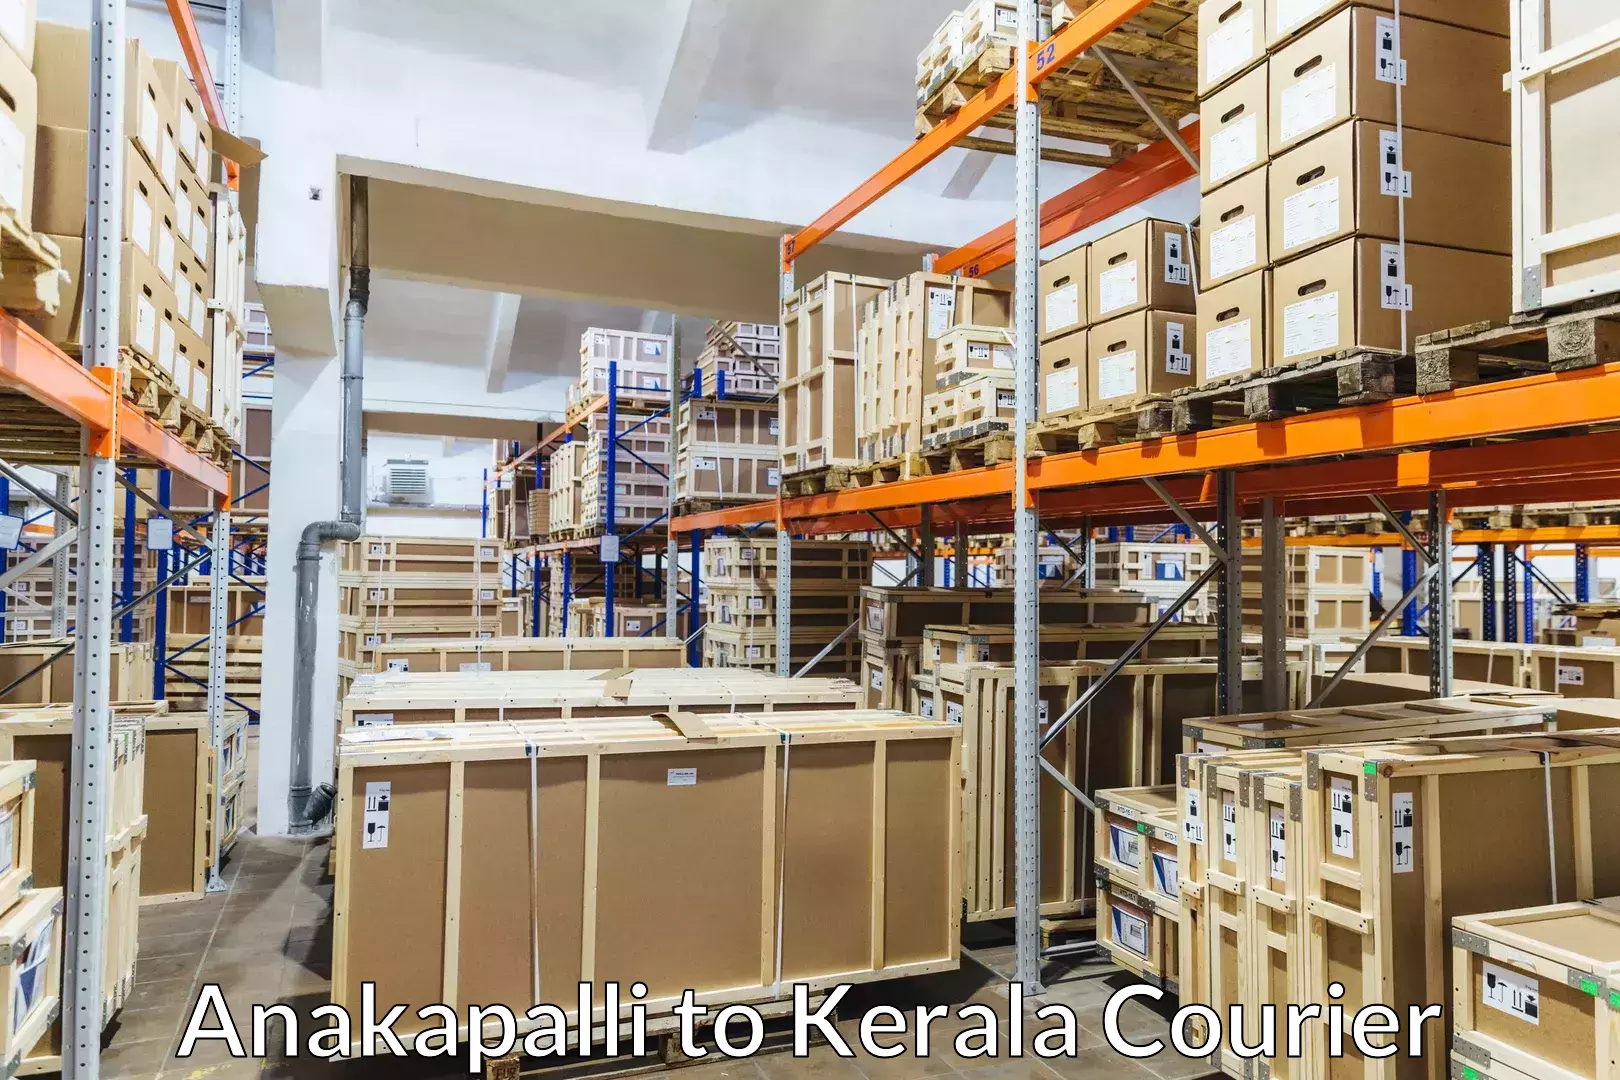 Professional movers and packers Anakapalli to Cherpulassery